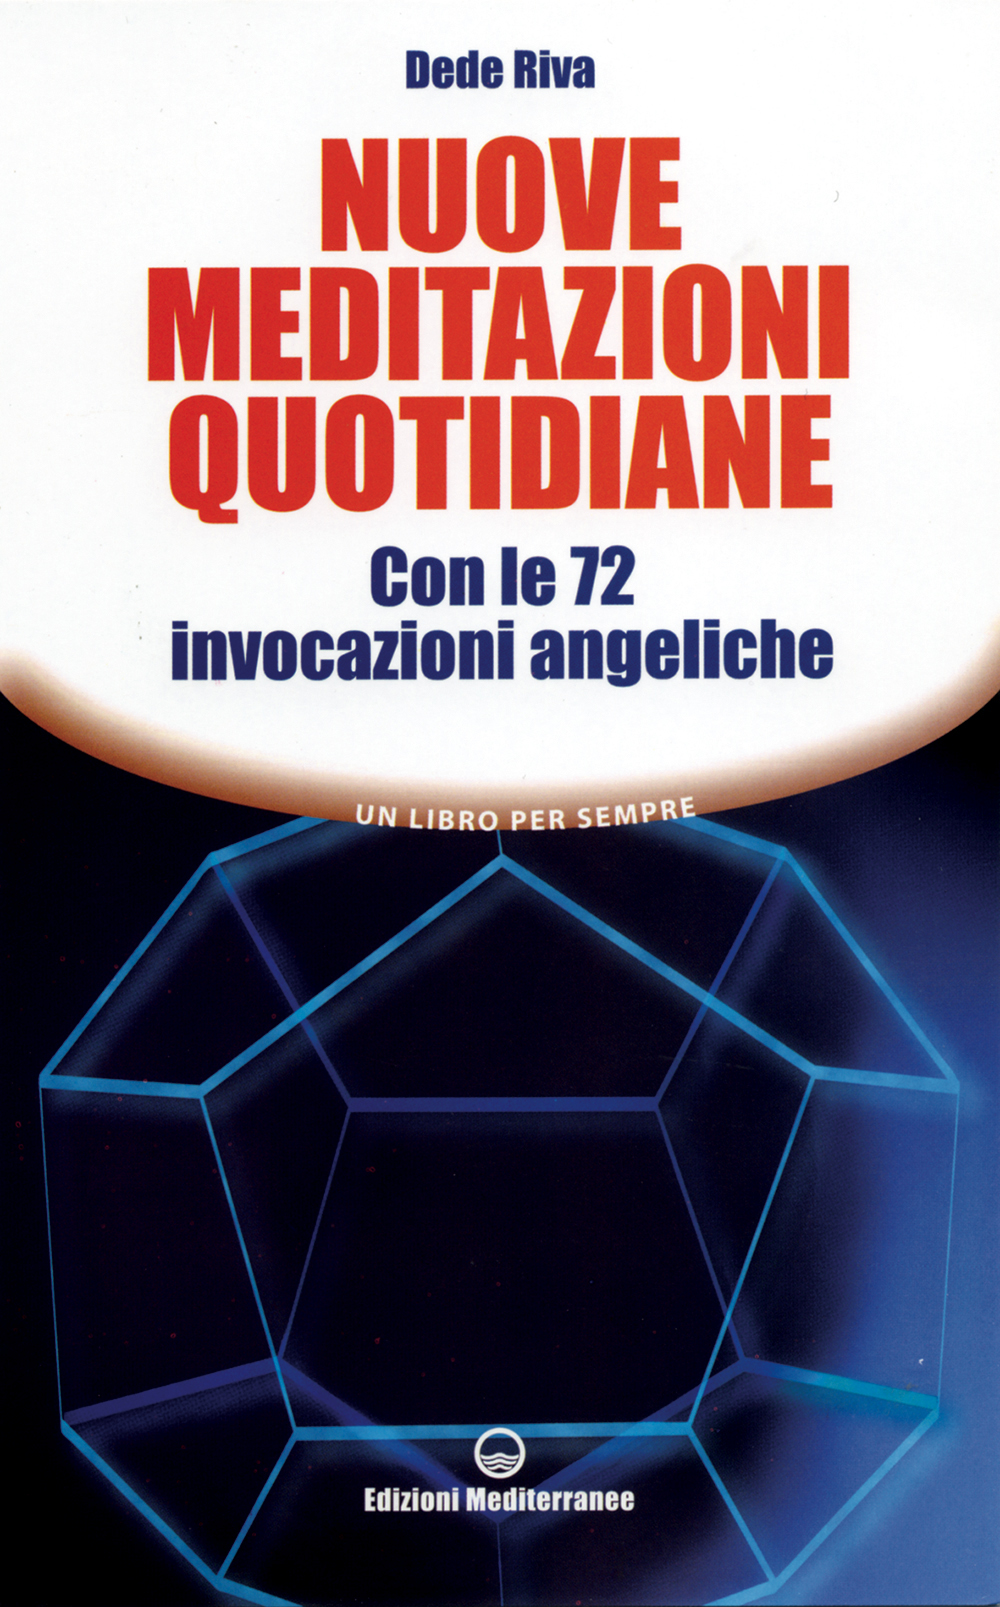 Libri Dede Riva - Nuove Meditazioni Quotidiane. Con Le 72 Invocazioni Angeliche NUOVO SIGILLATO, EDIZIONE DEL 28/03/2007 SUBITO DISPONIBILE